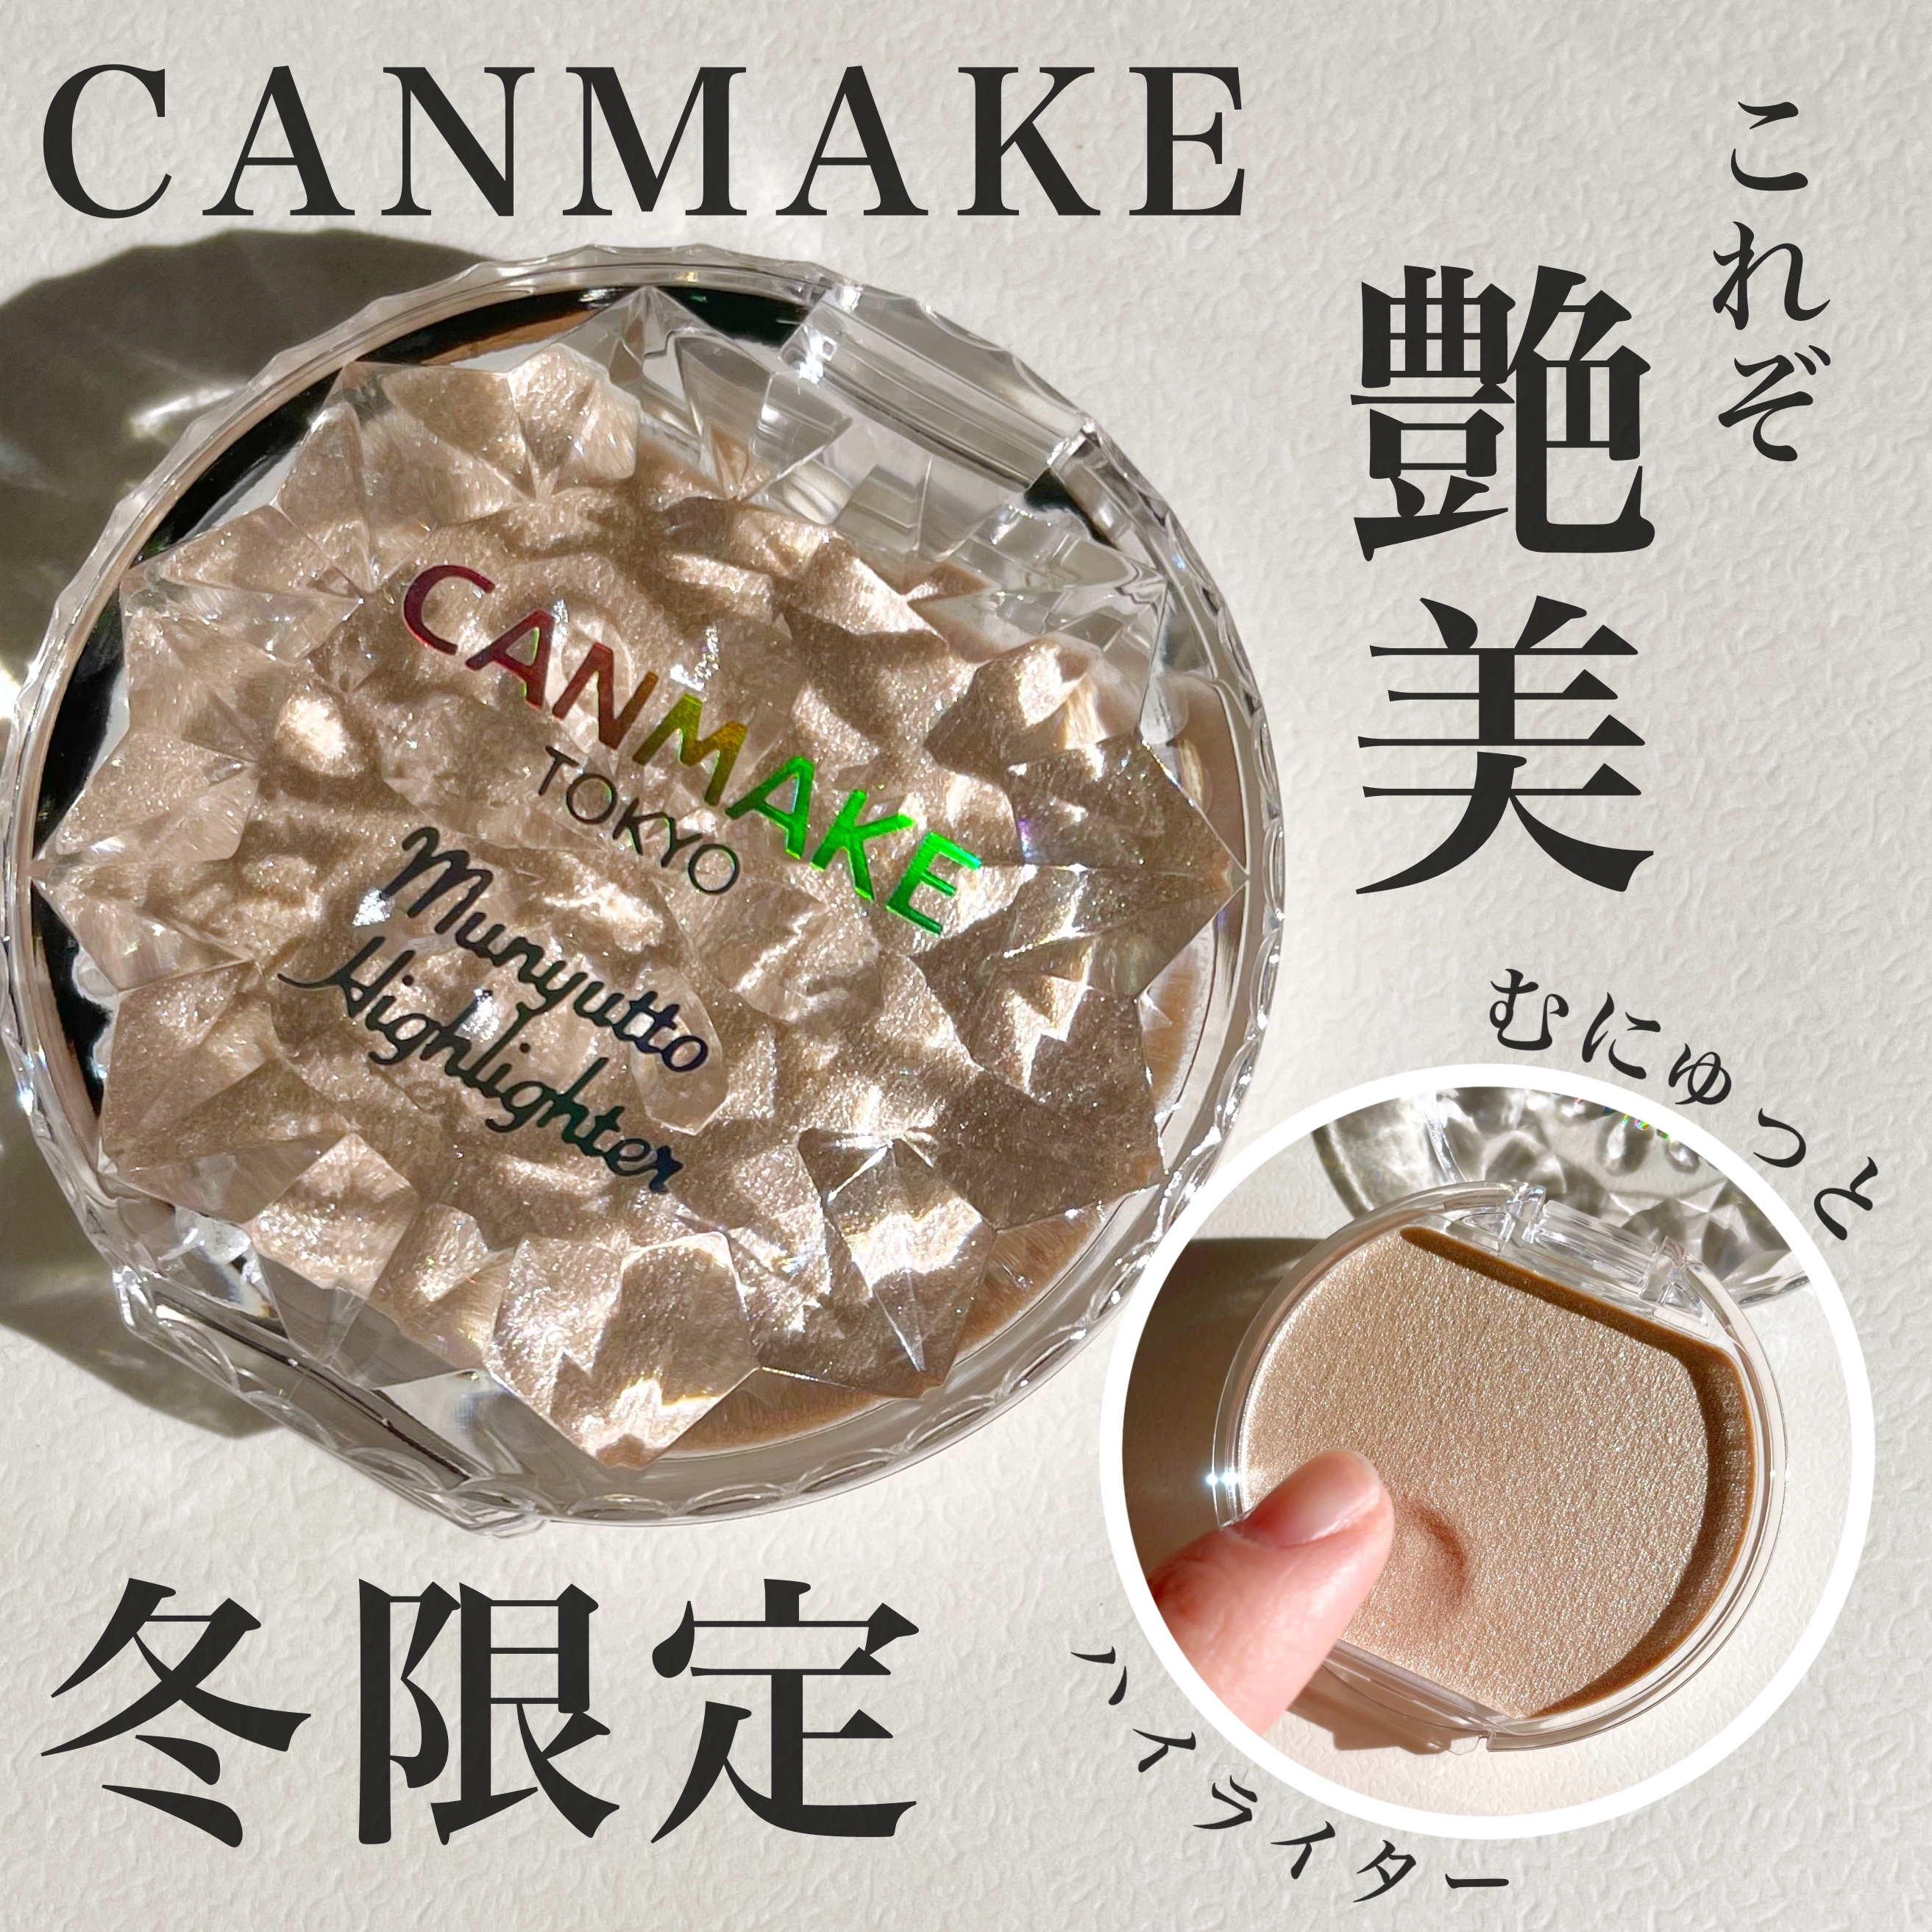 CANMAKE(キャンメイク) むにゅっとハイライターの良い点・メリットに関するKeiさんの口コミ画像1